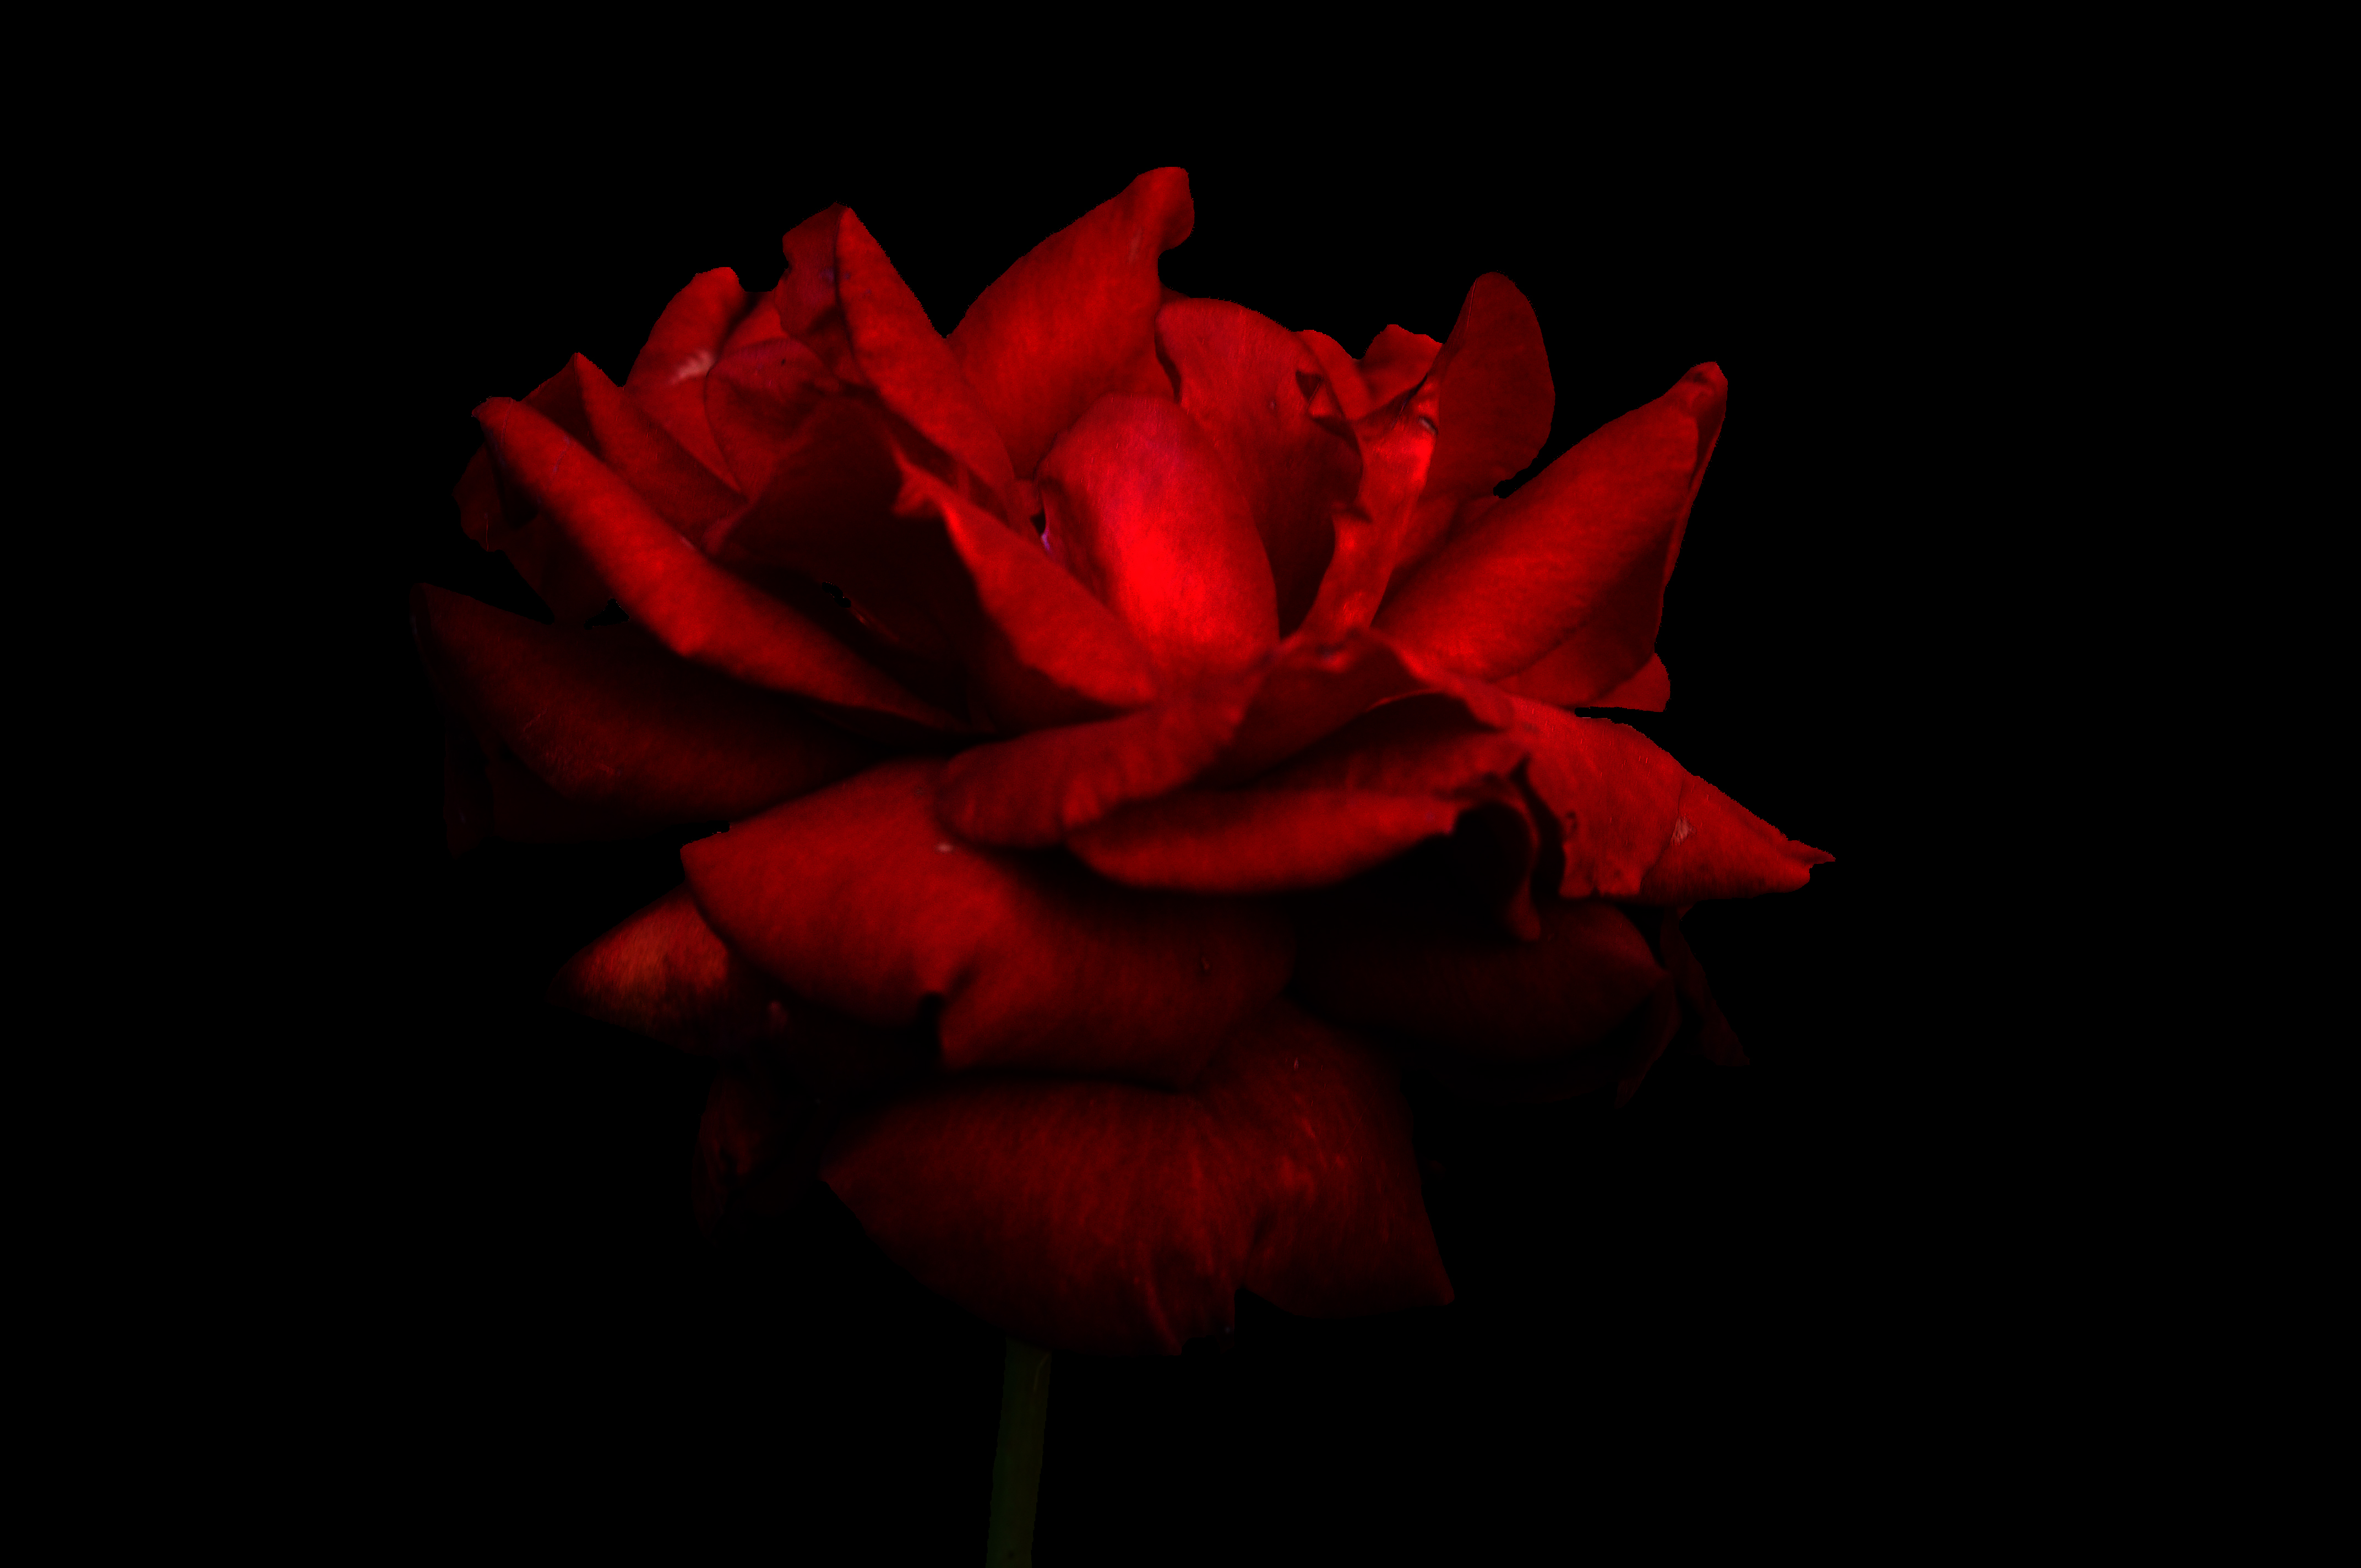 dark red rose wallpaper,red,flowering plant,petal,garden roses,flower